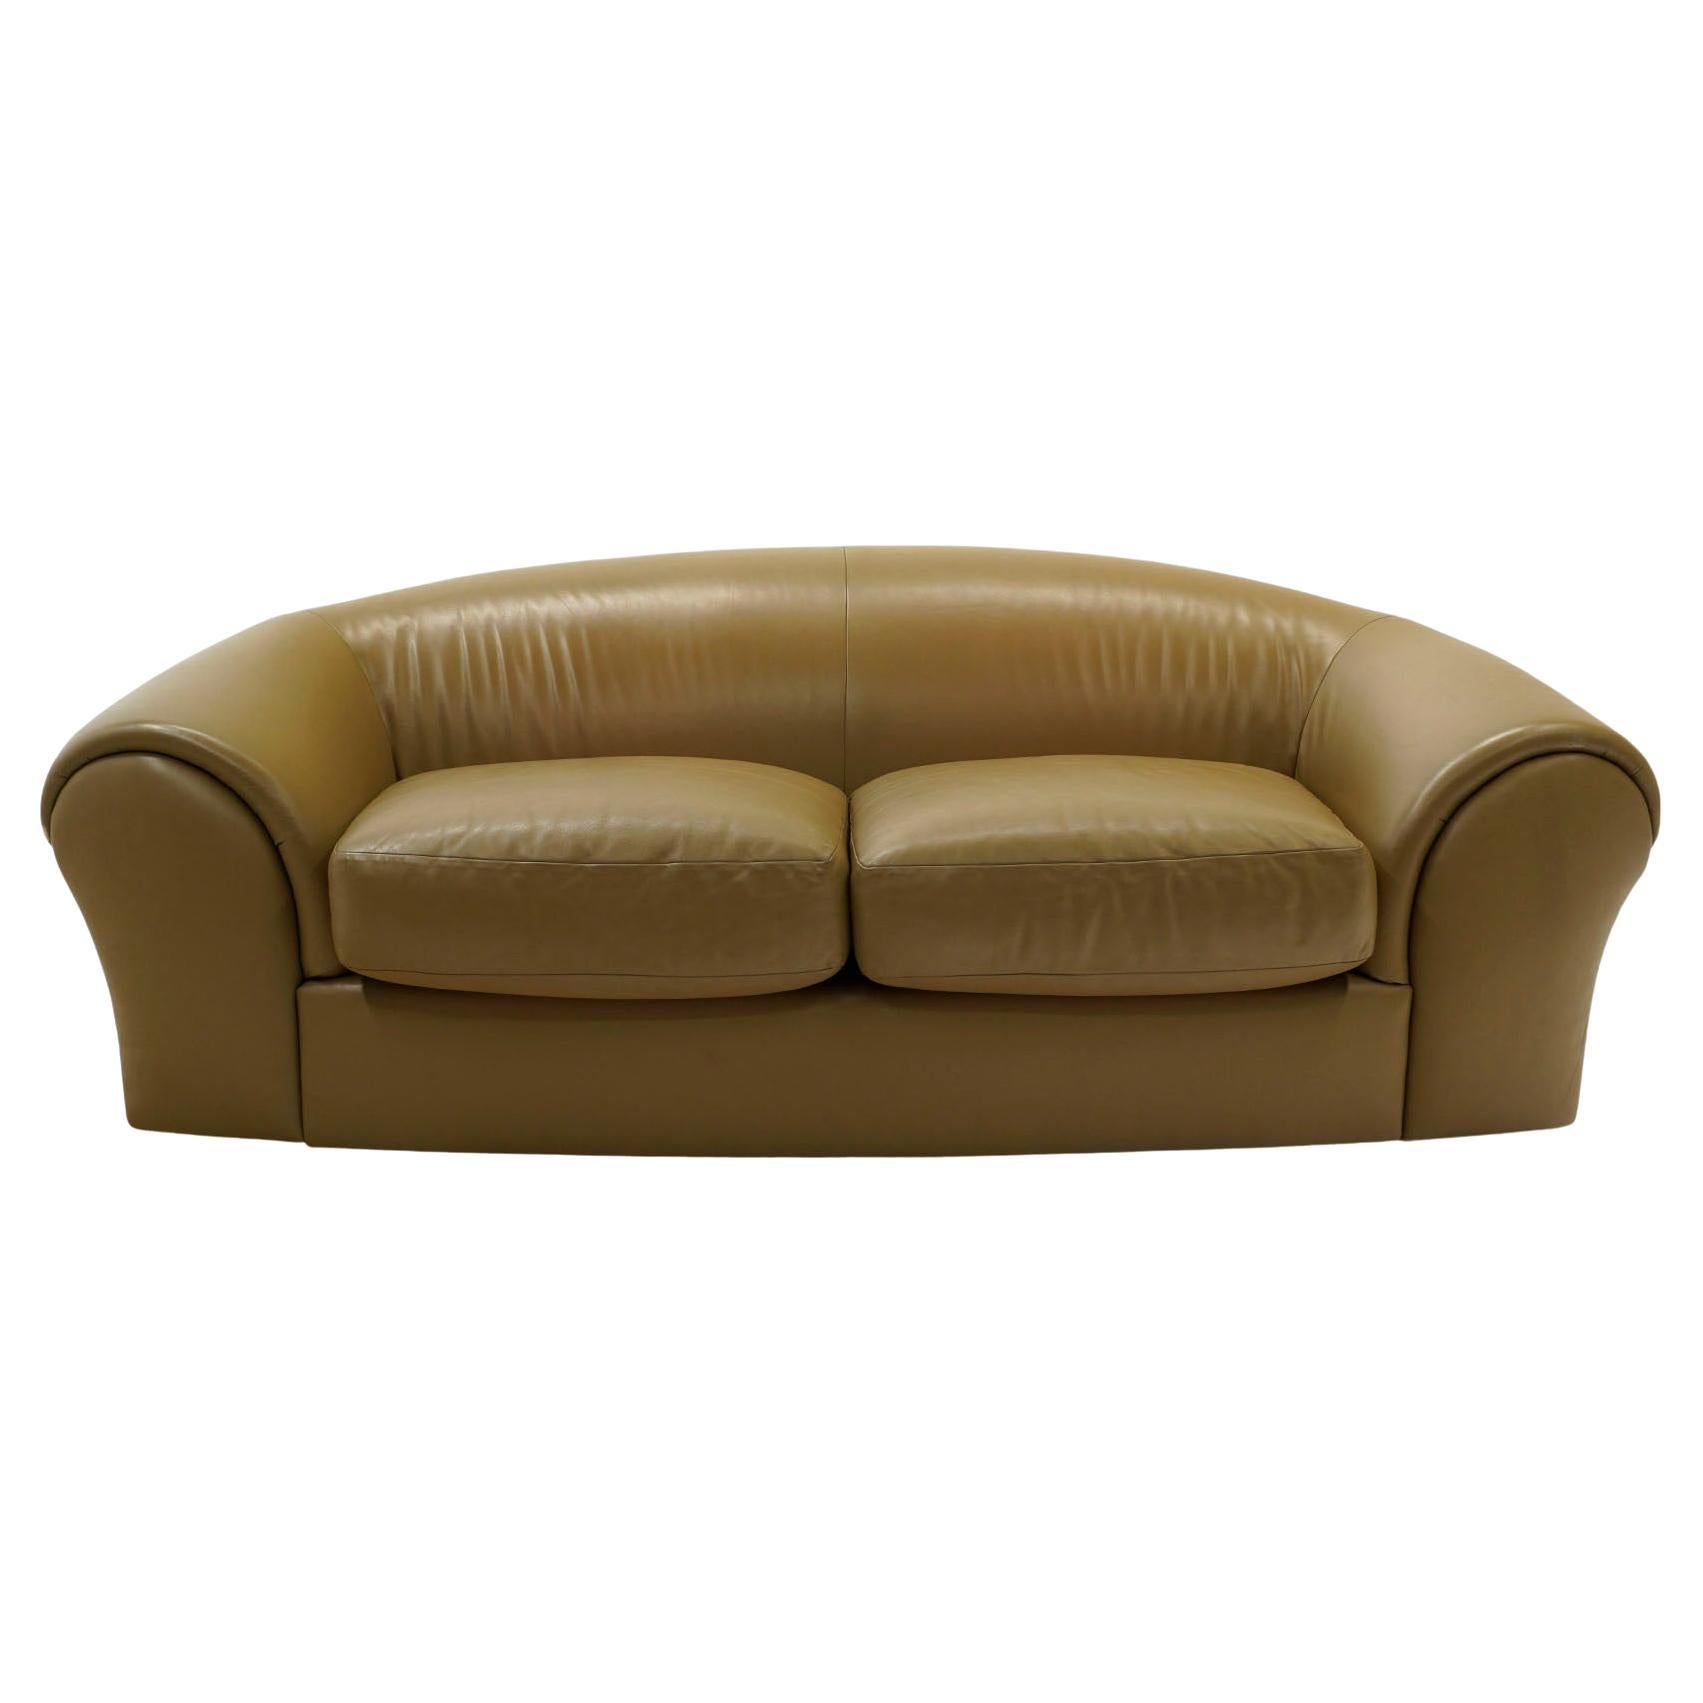 Robert Venturi Grandma Sofa in the Original Tan / Taupe Leather for Knoll.